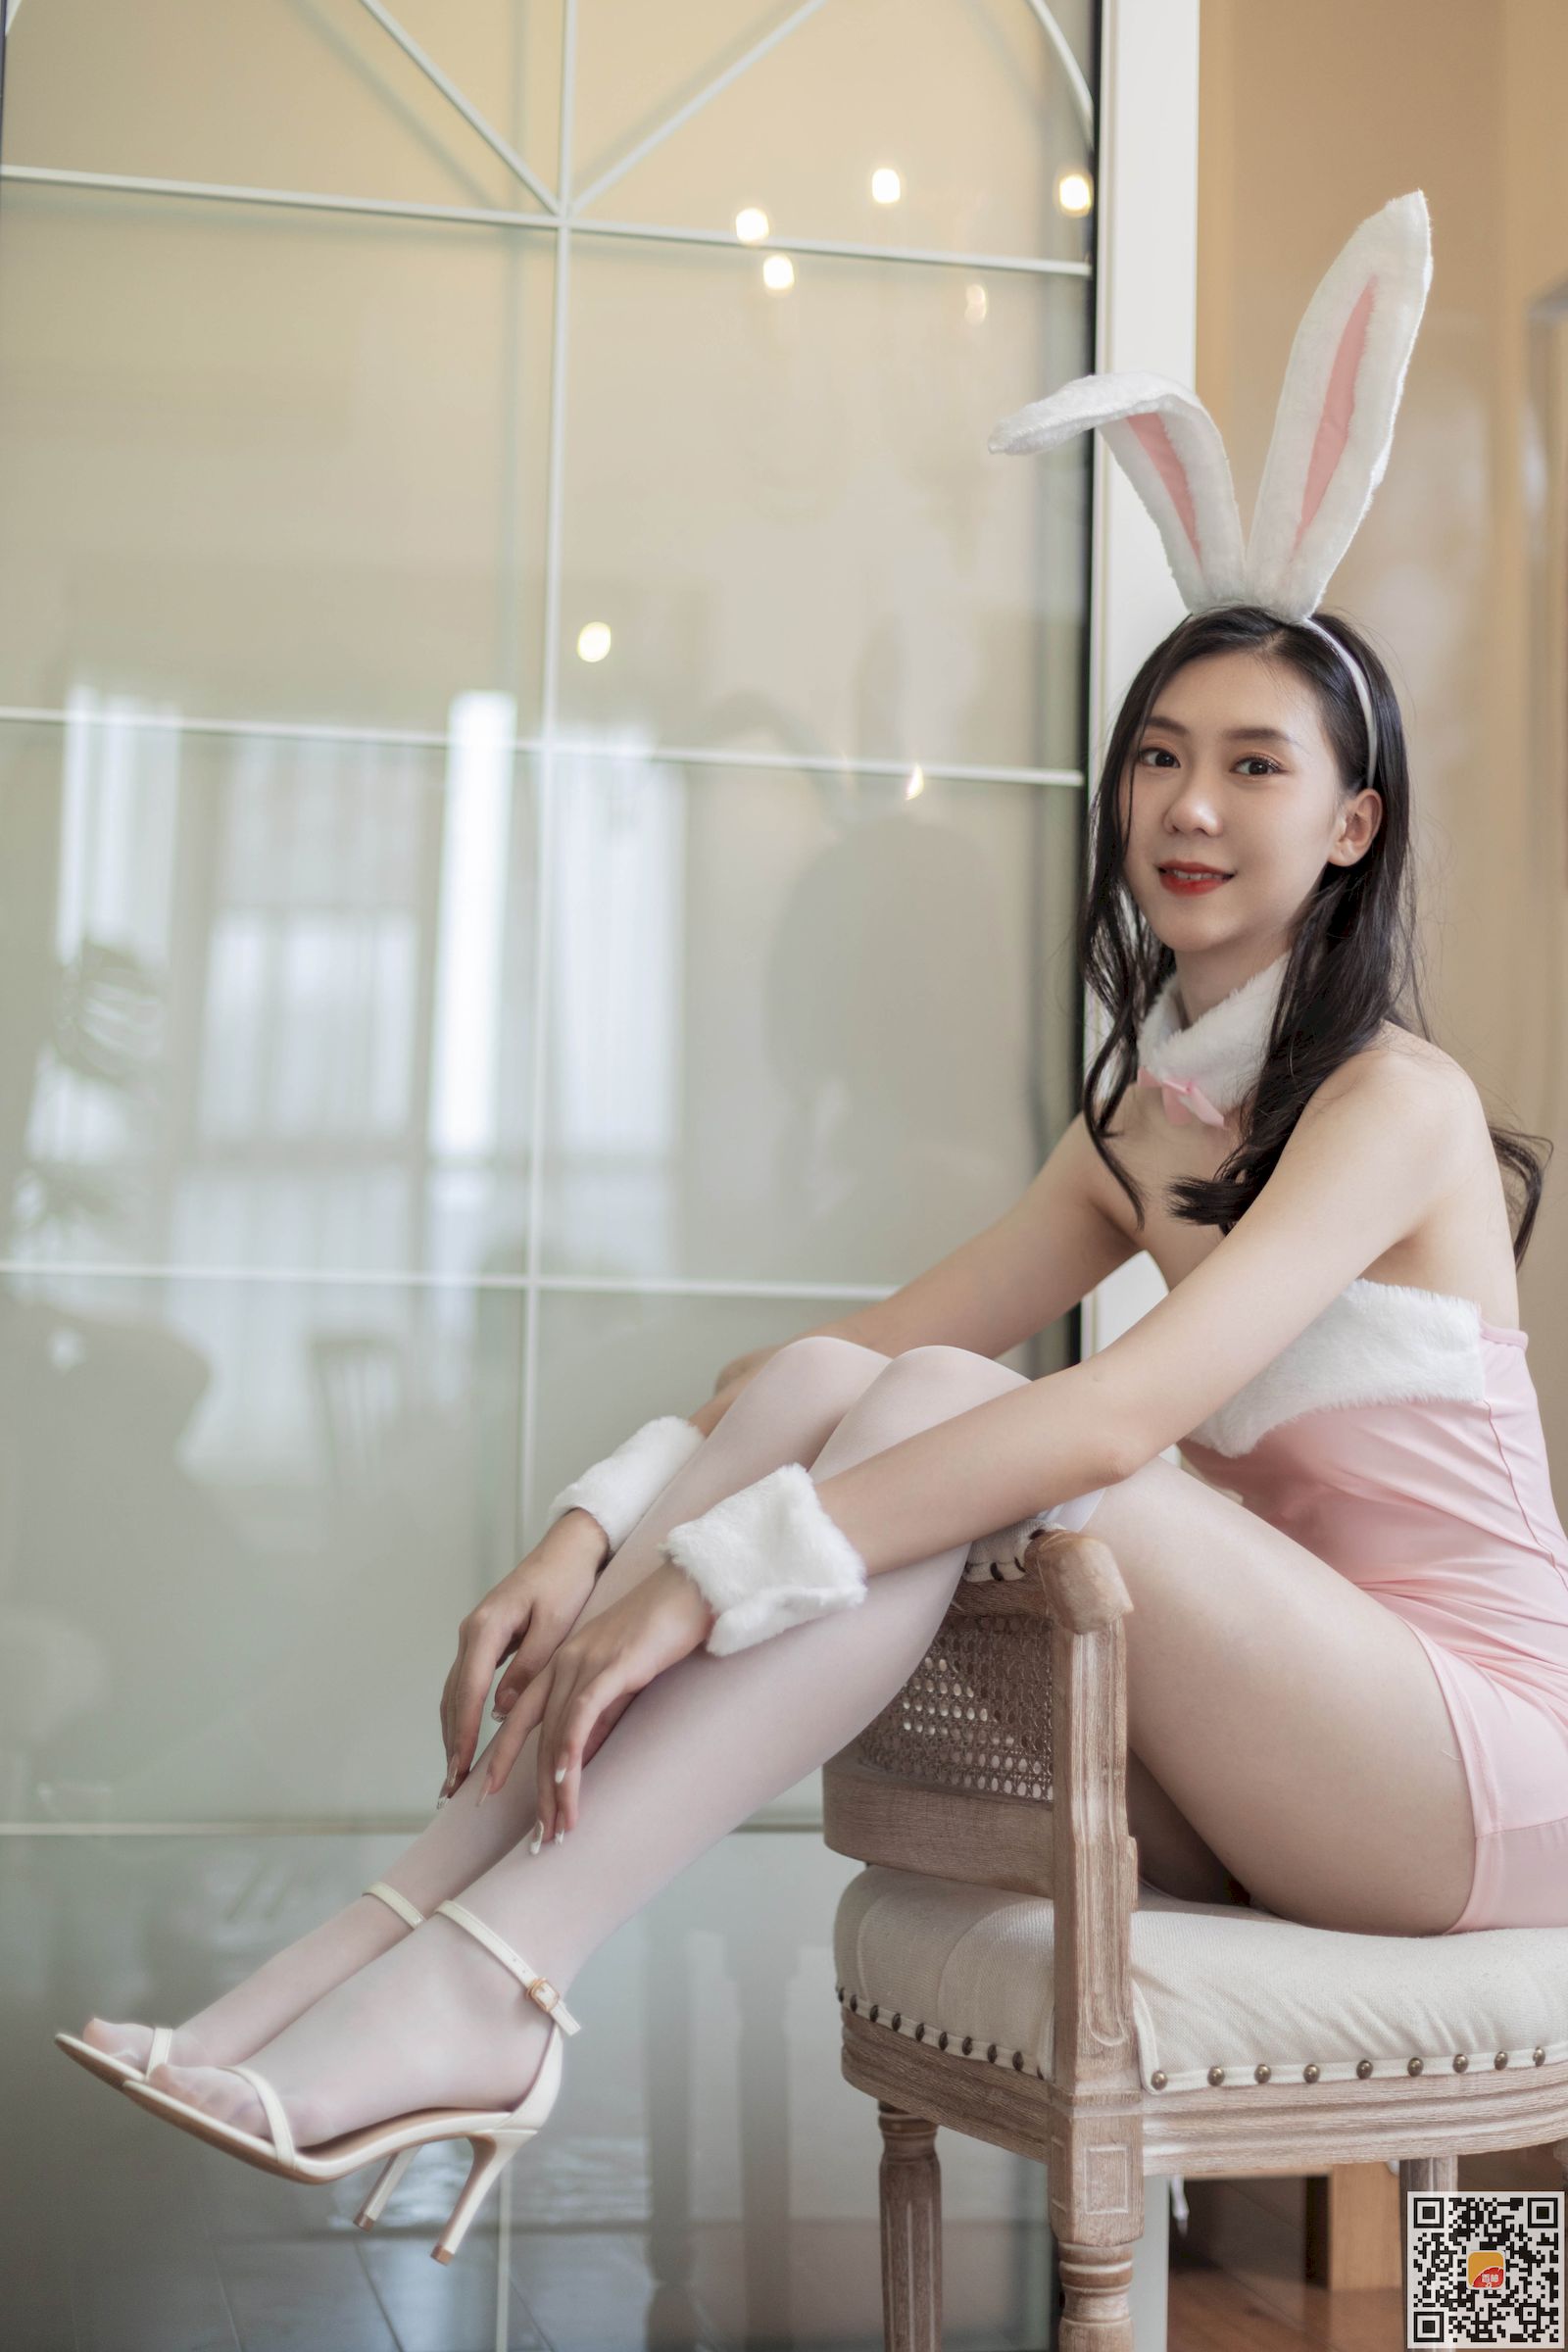 妮可可白丝美腿粉红兔女郎装扮居家写真